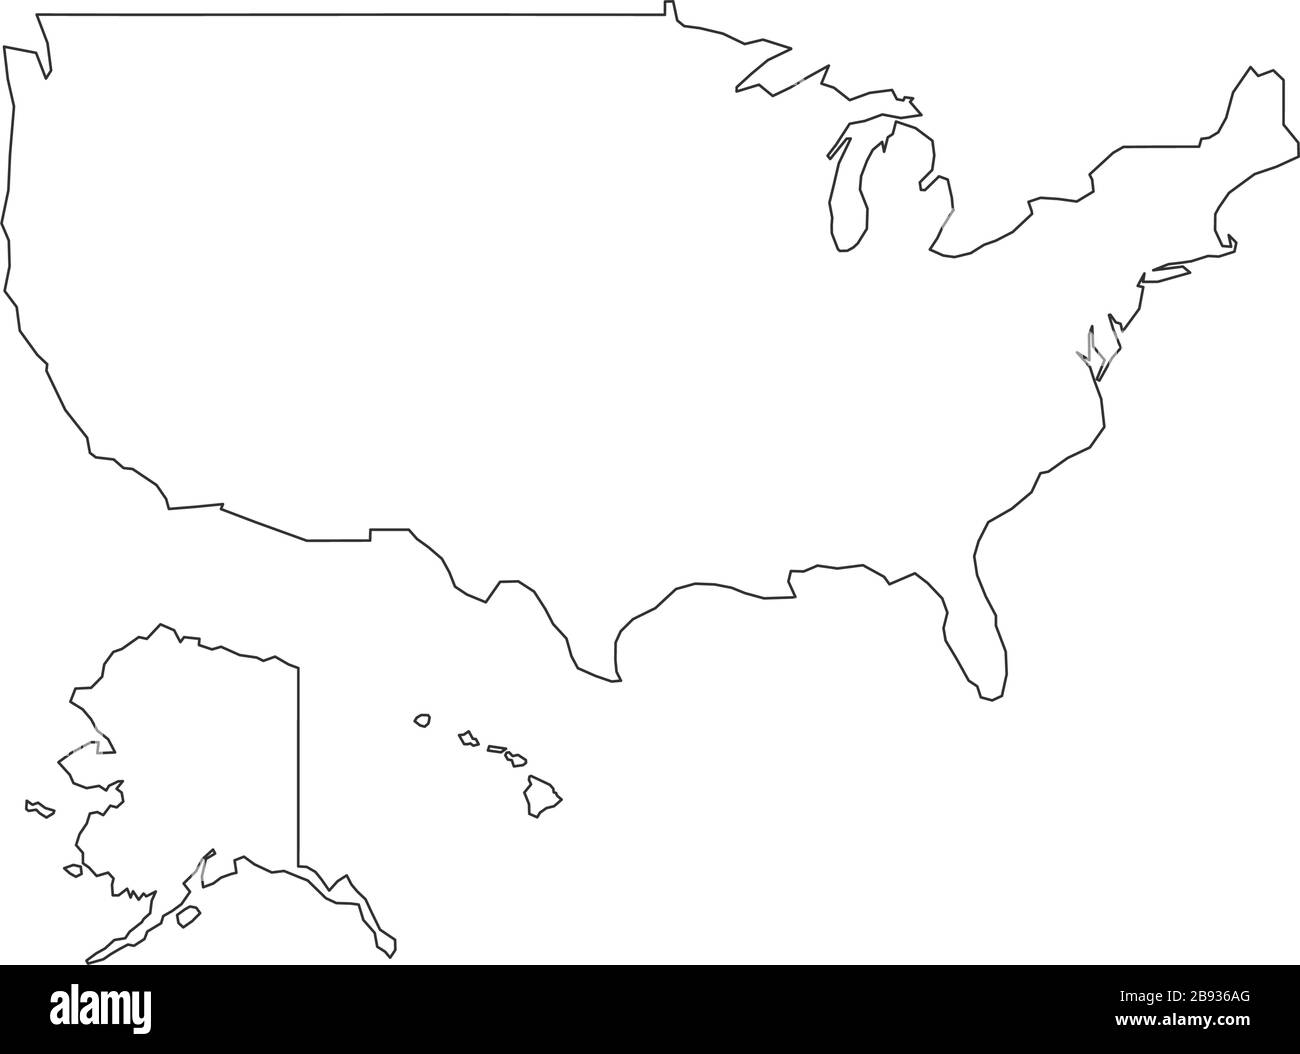 Semplice mappa lineare degli stati uniti. Illustrazione vettoriale in stock isolata su sfondo bianco. Illustrazione Vettoriale